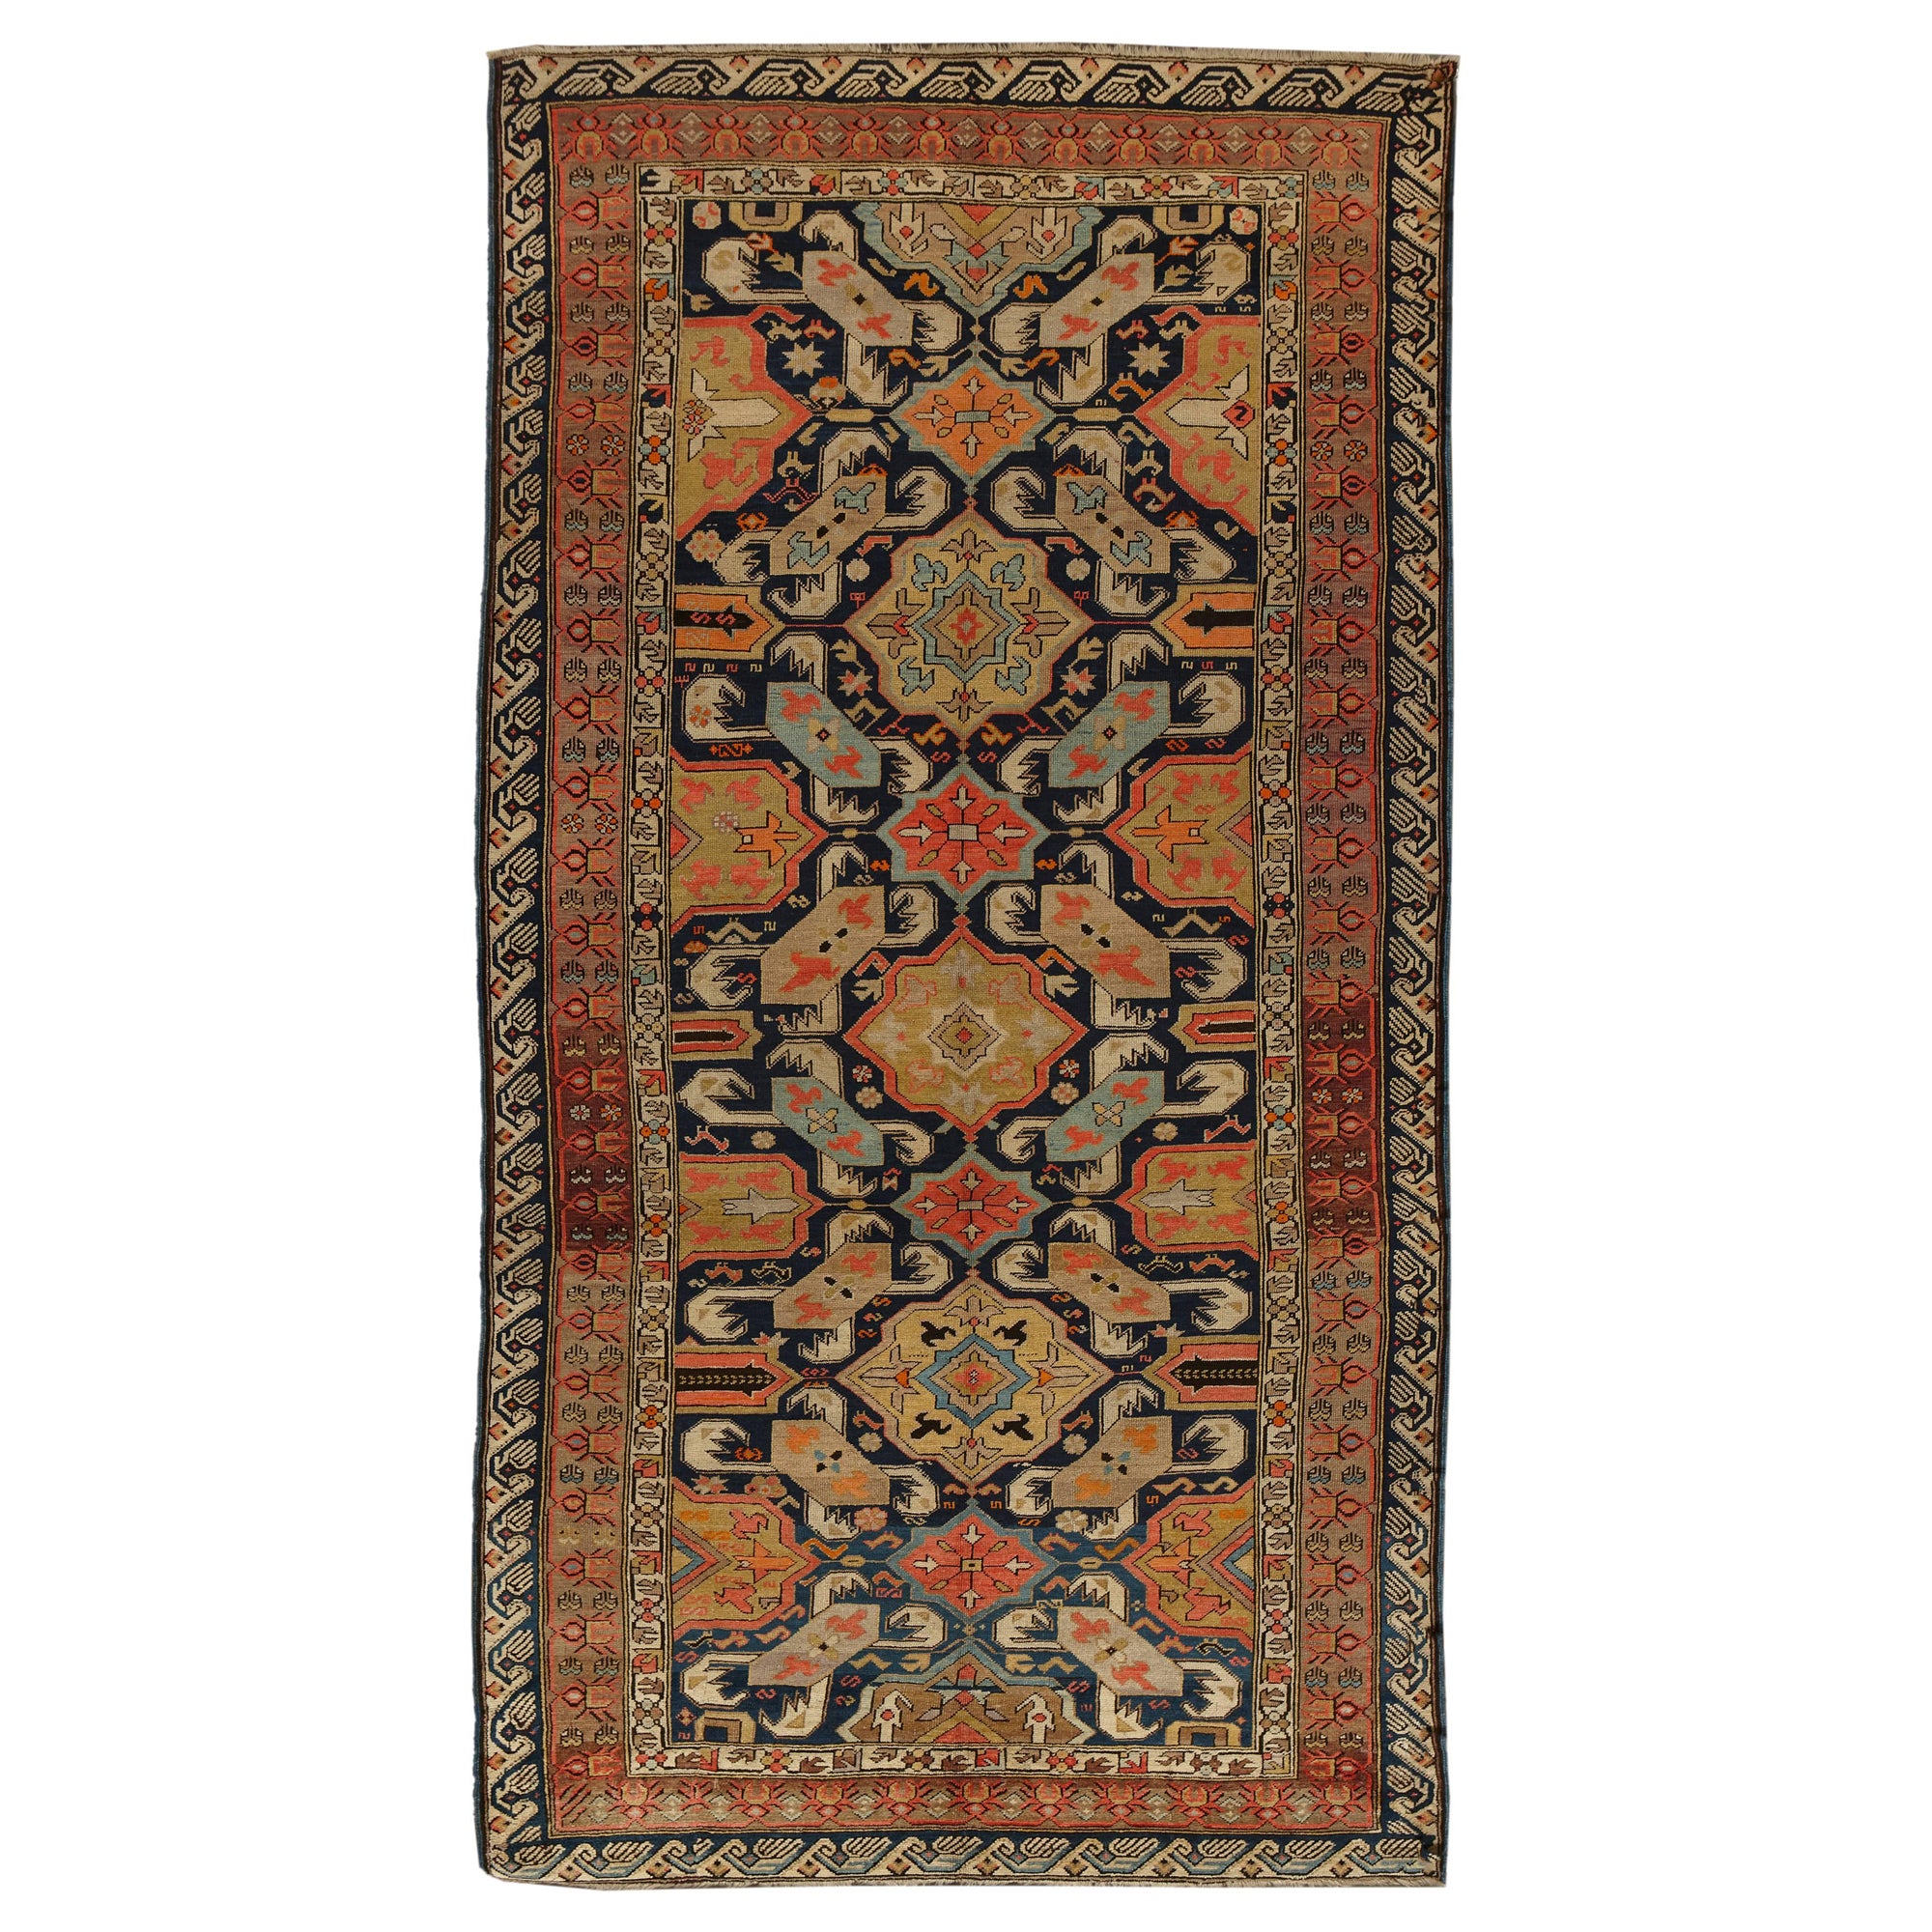 Seltener Karabagh-Galerie-Teppich aus dem 19. Jahrhundert